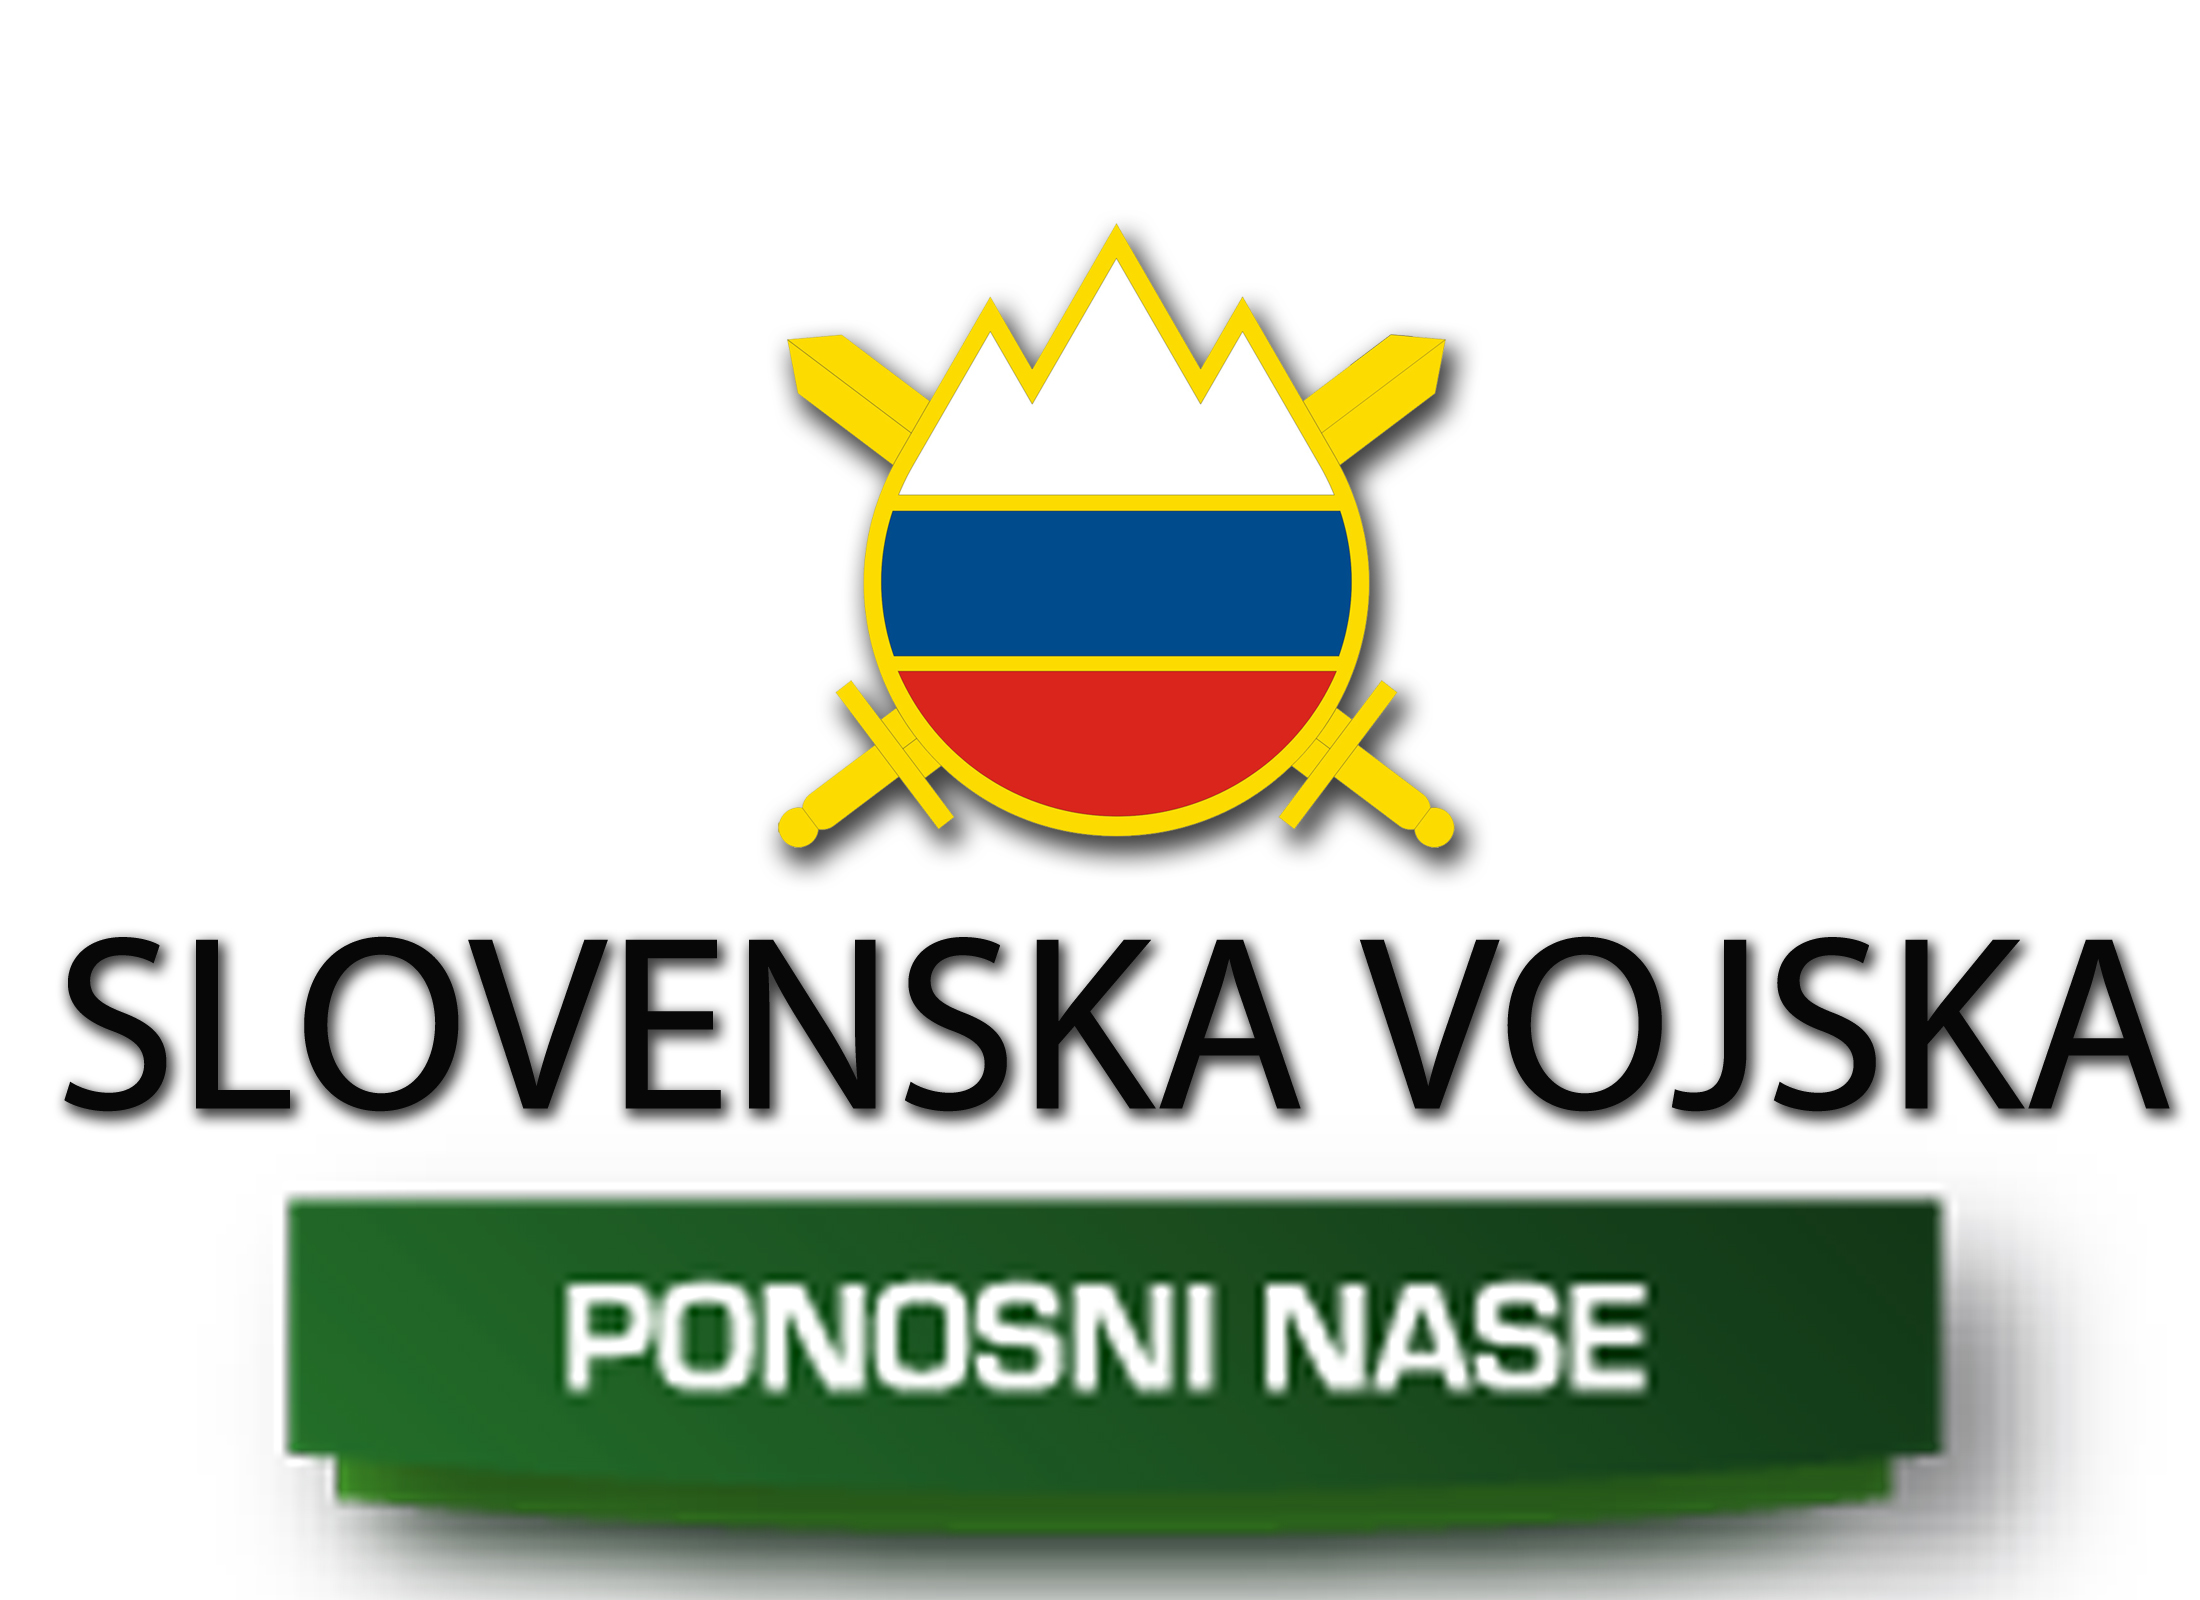 Slovenska vojska, Ponosni nase